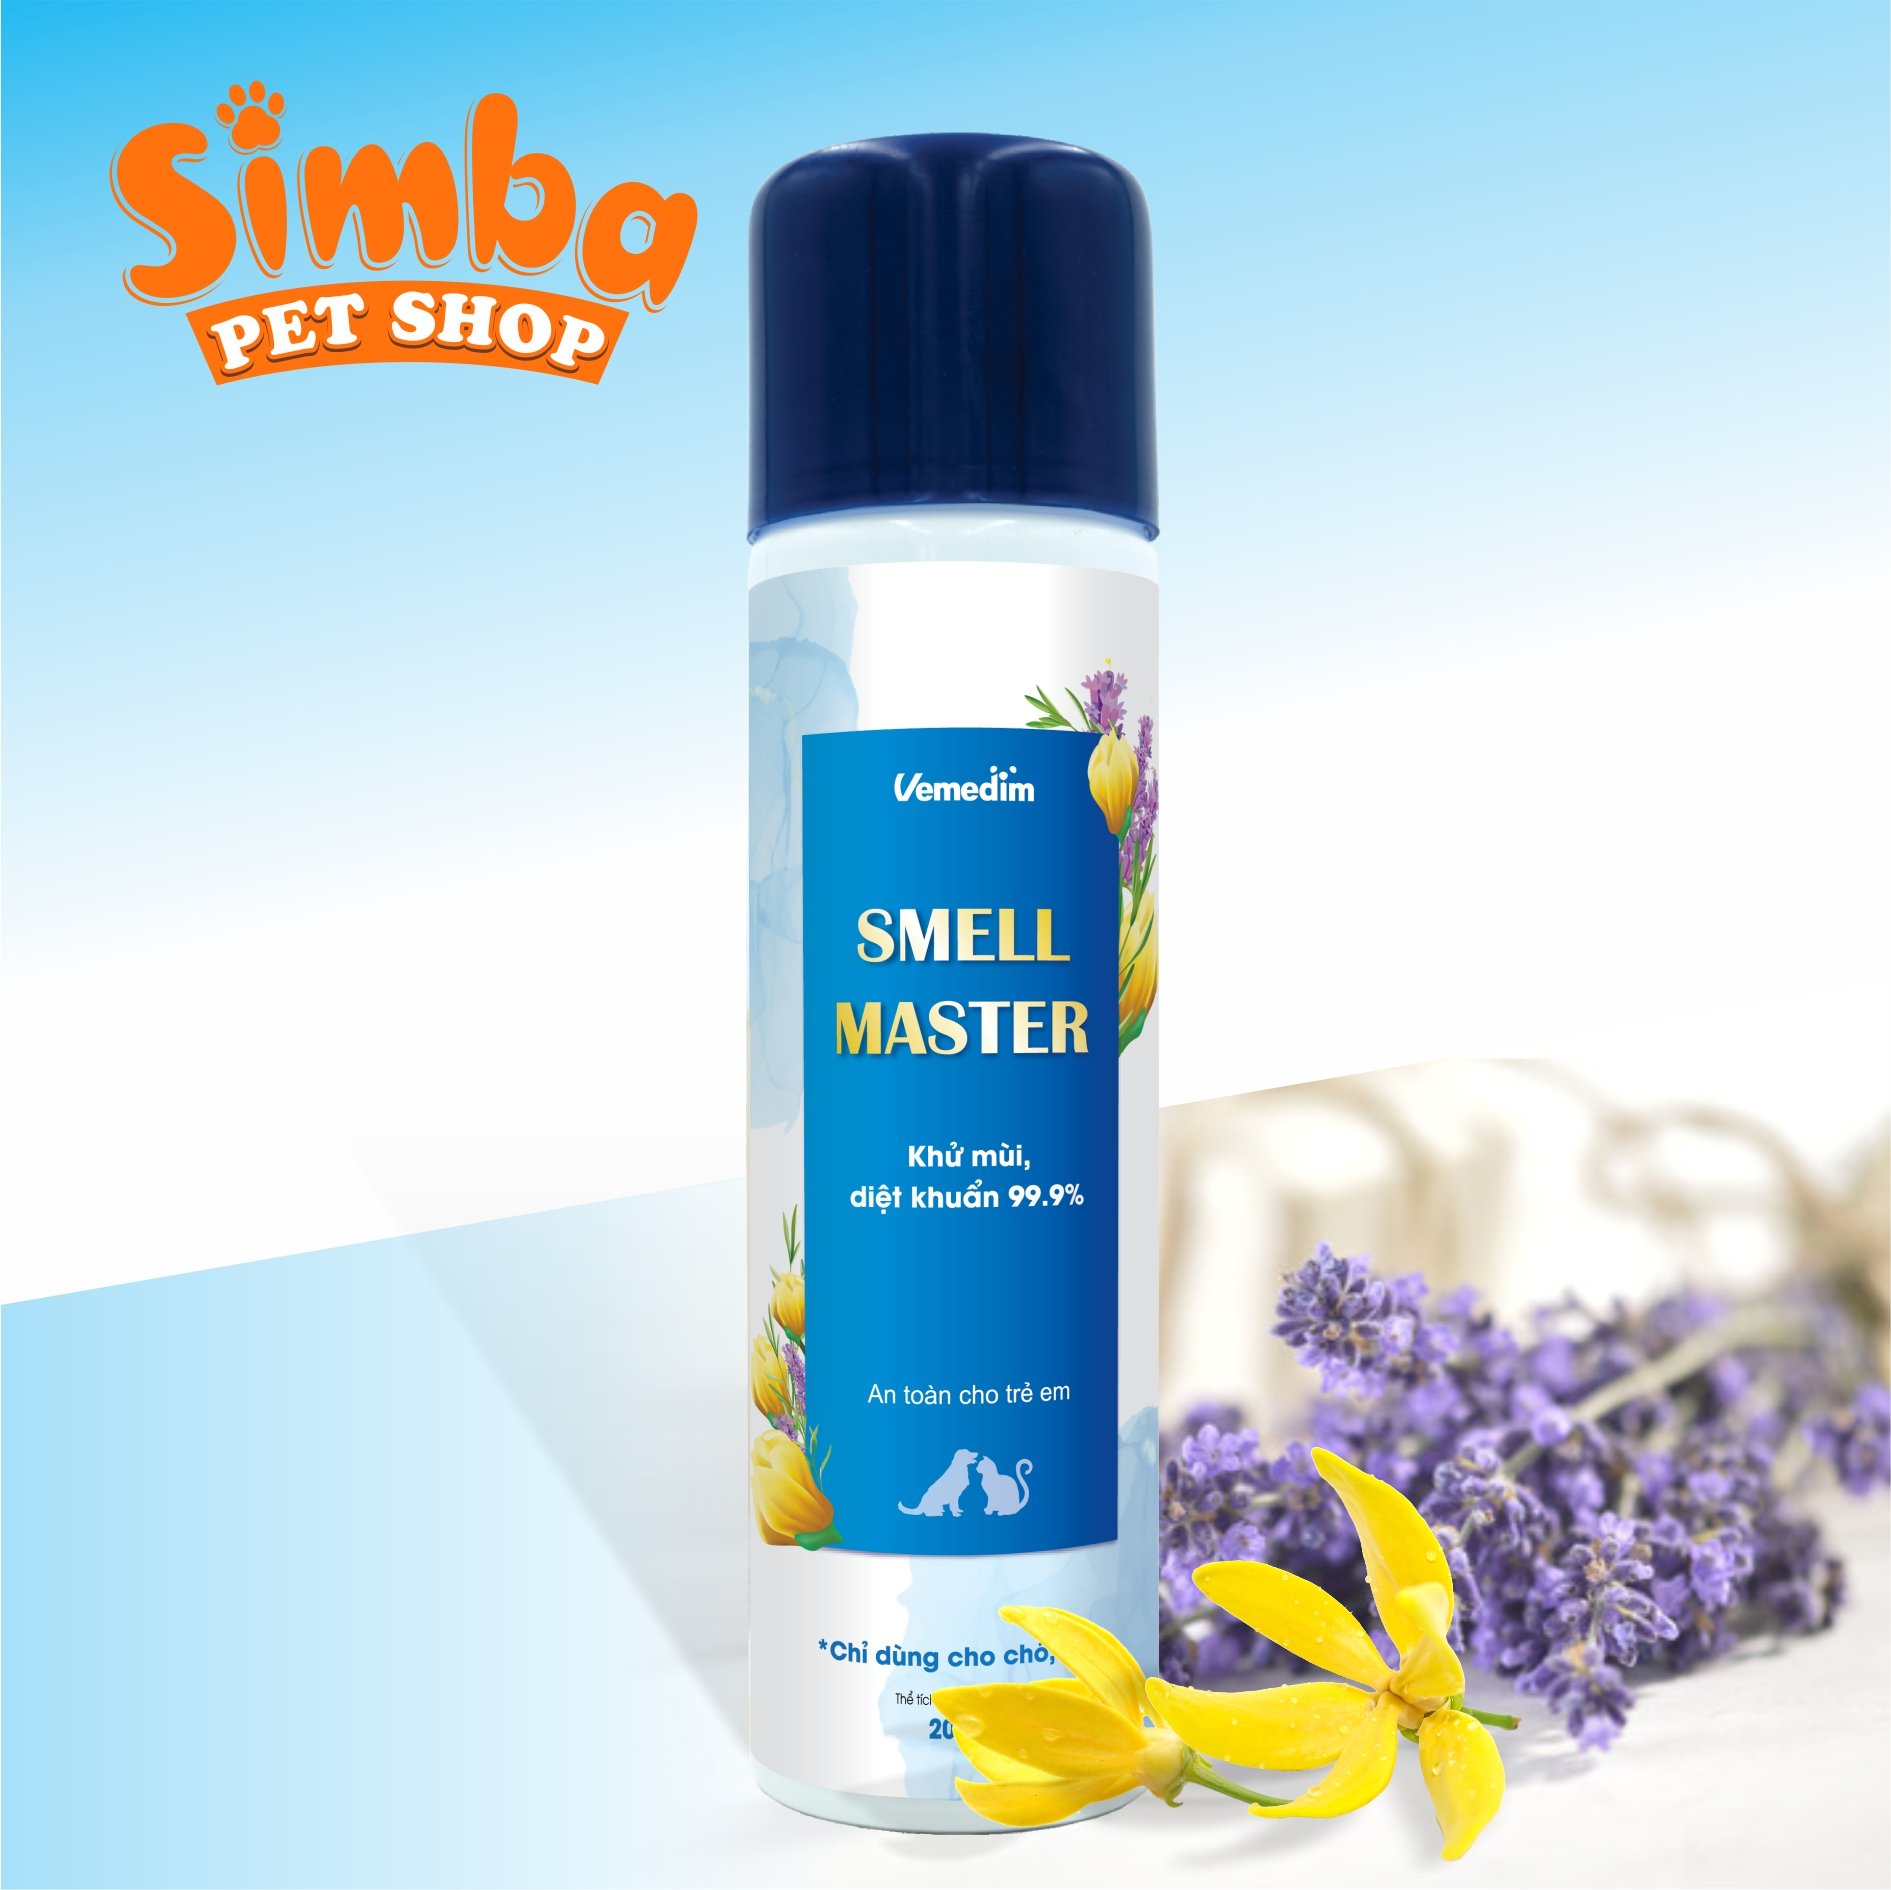 Smell Master giúp khử mùi diệt khuẩn 99.9% trên da, lông thú cưng